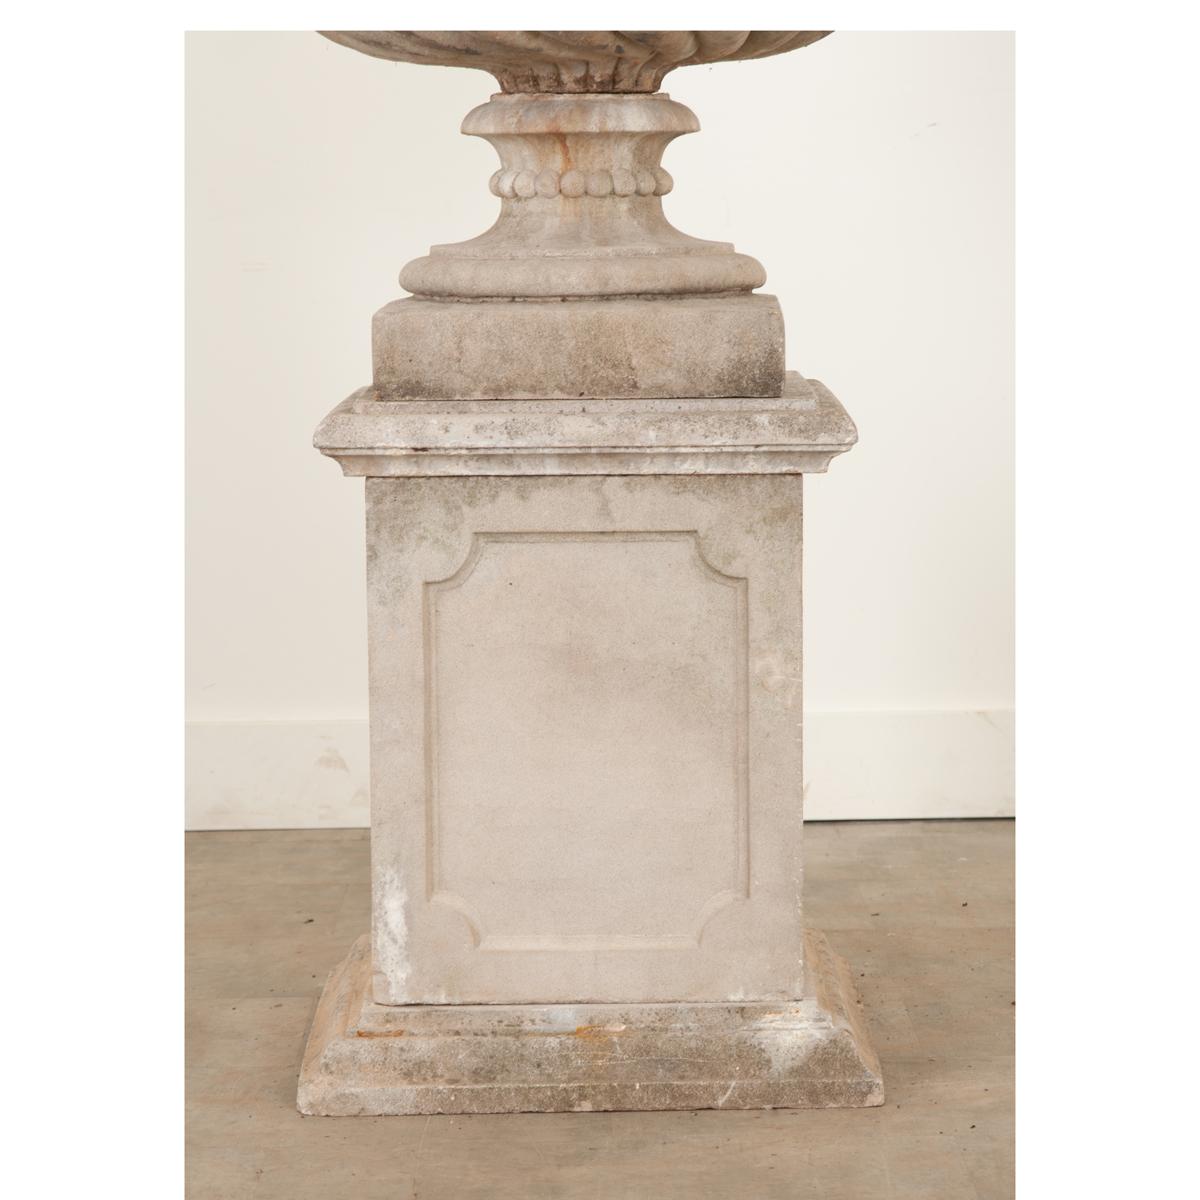 Other English Raised Garden Urn on Pedestal